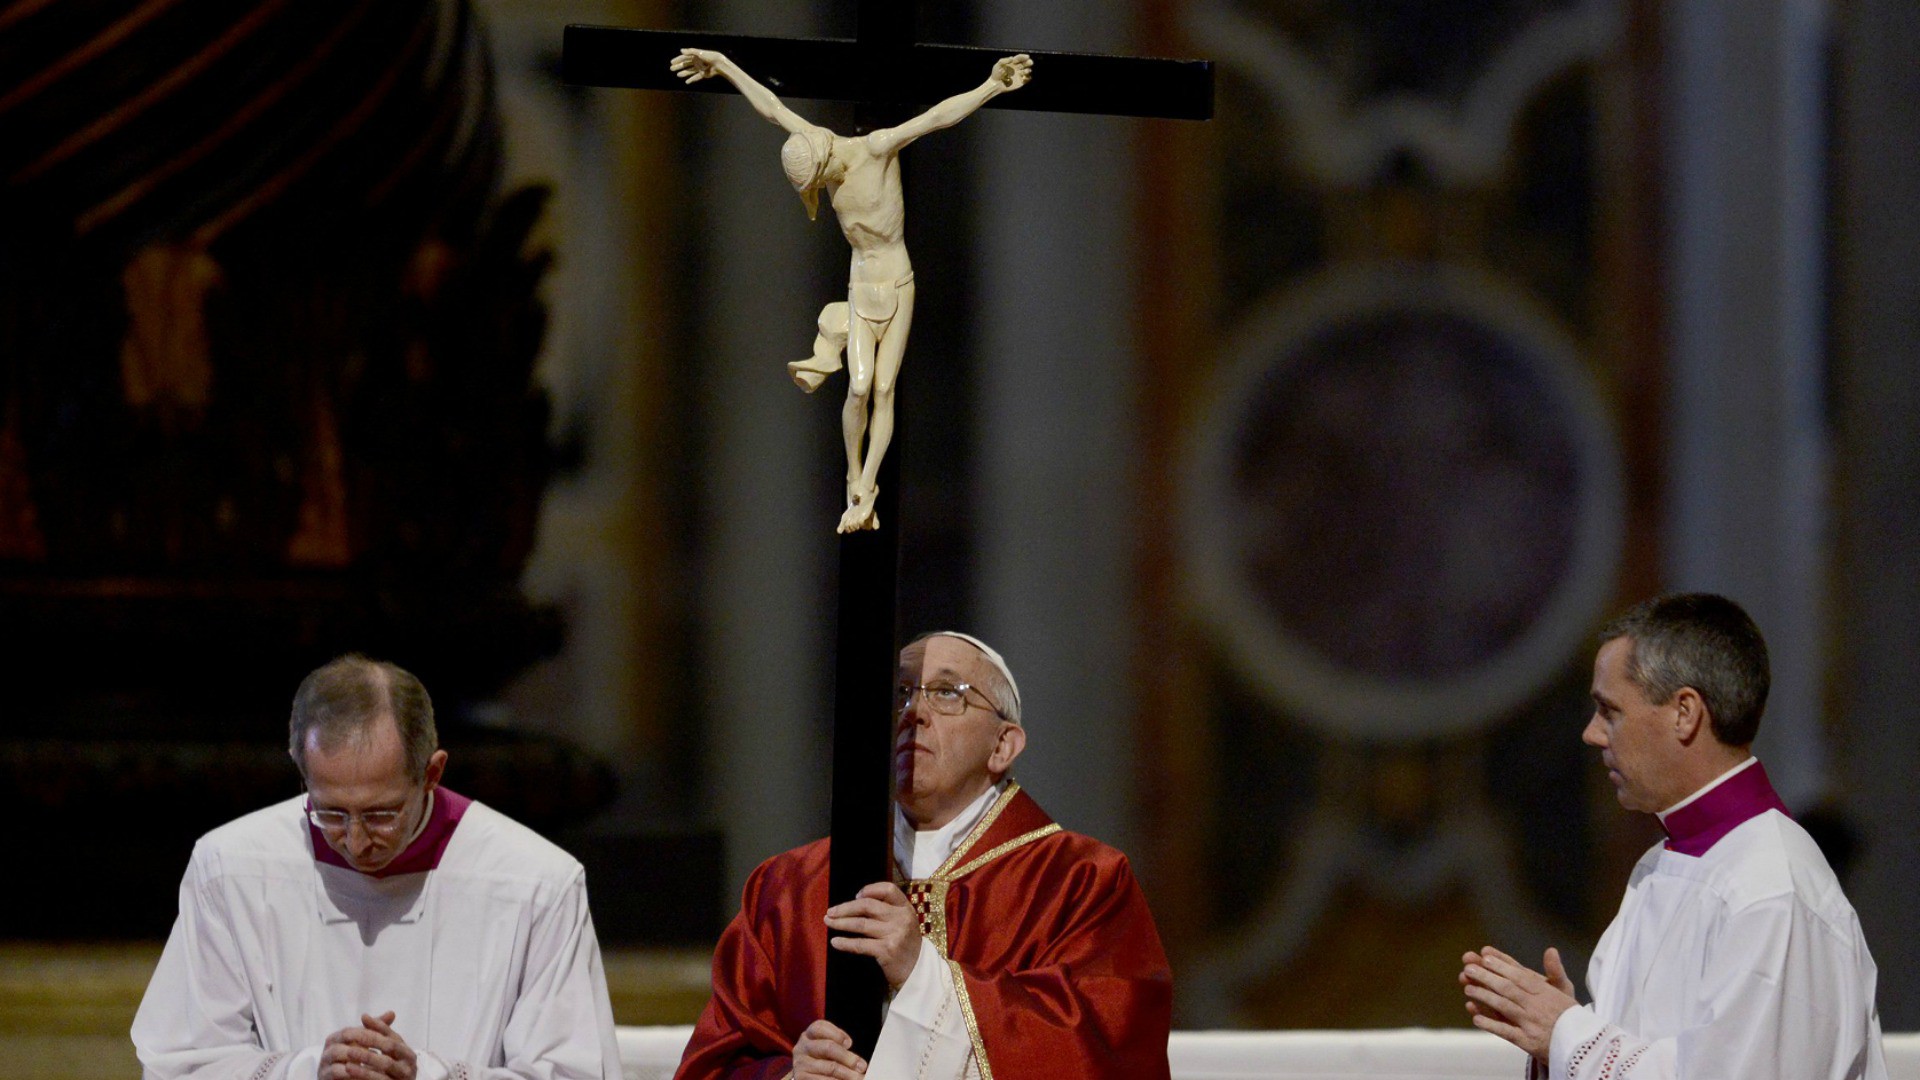 Le pape François prêche une retraite spirituelle pour les prêtres | Photo d'illustration: © KNA